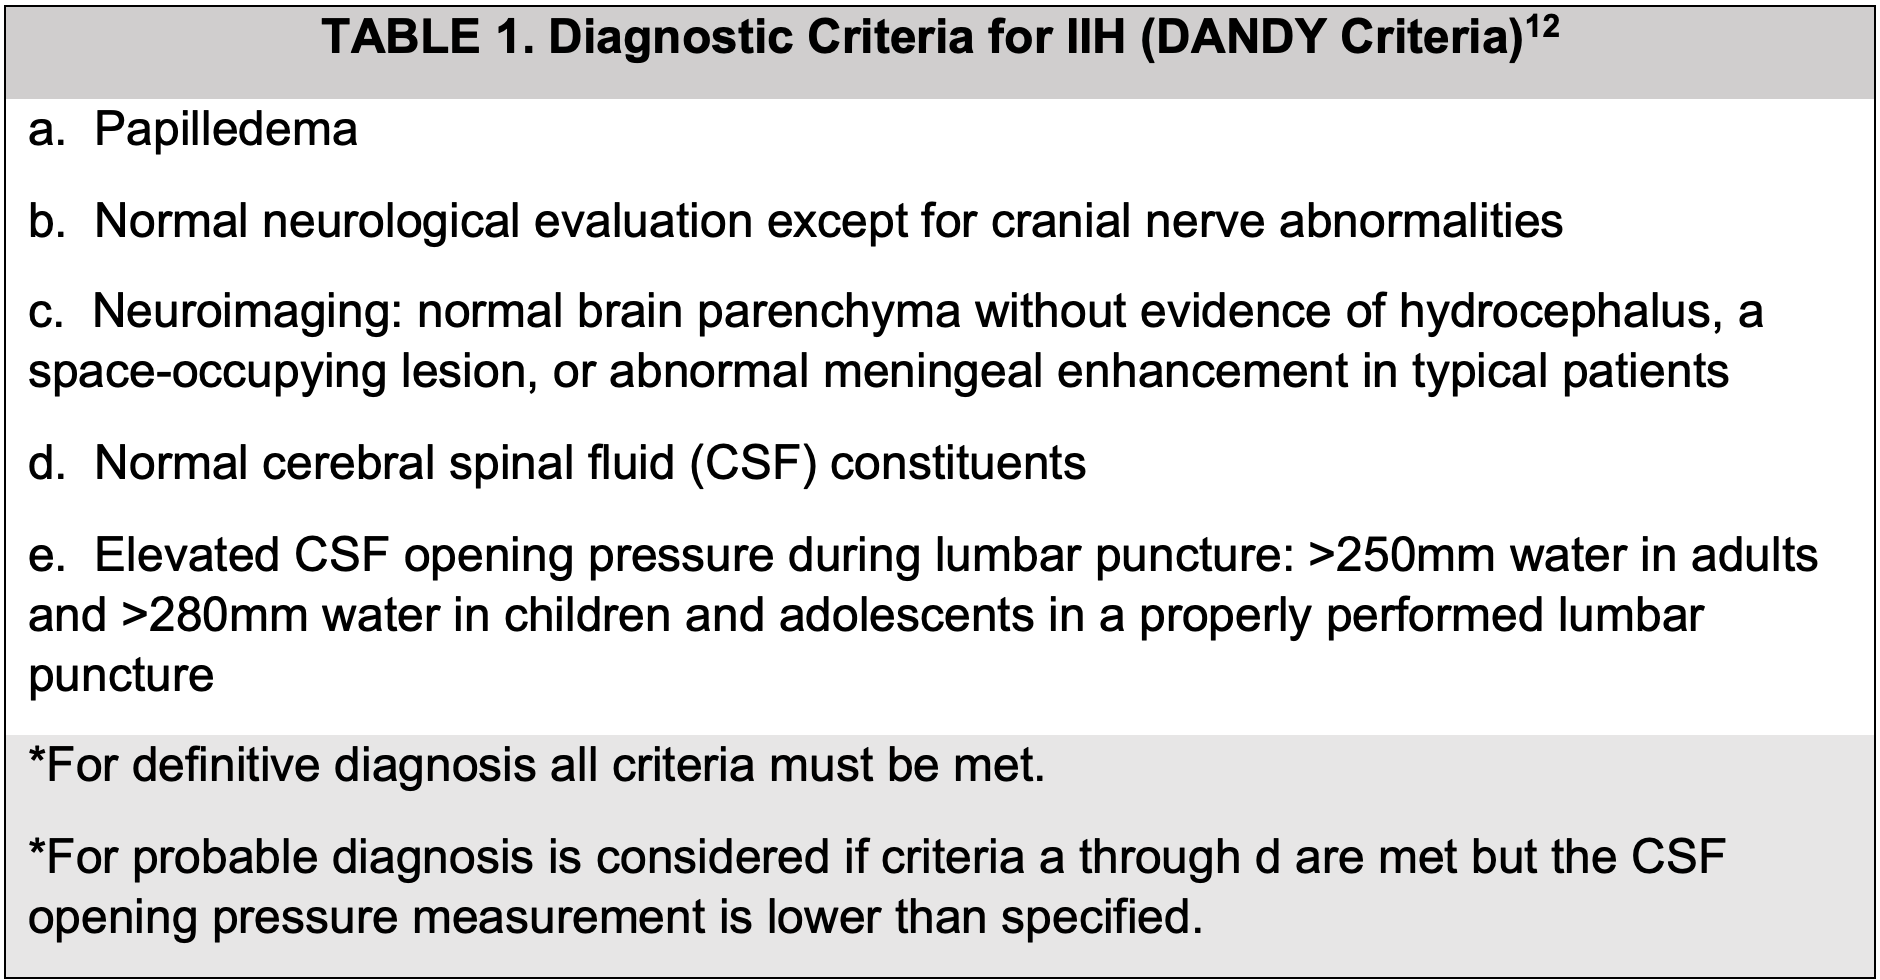 TABLE 1. Diagnostic Criteria for IIH (DANDY Criteria)